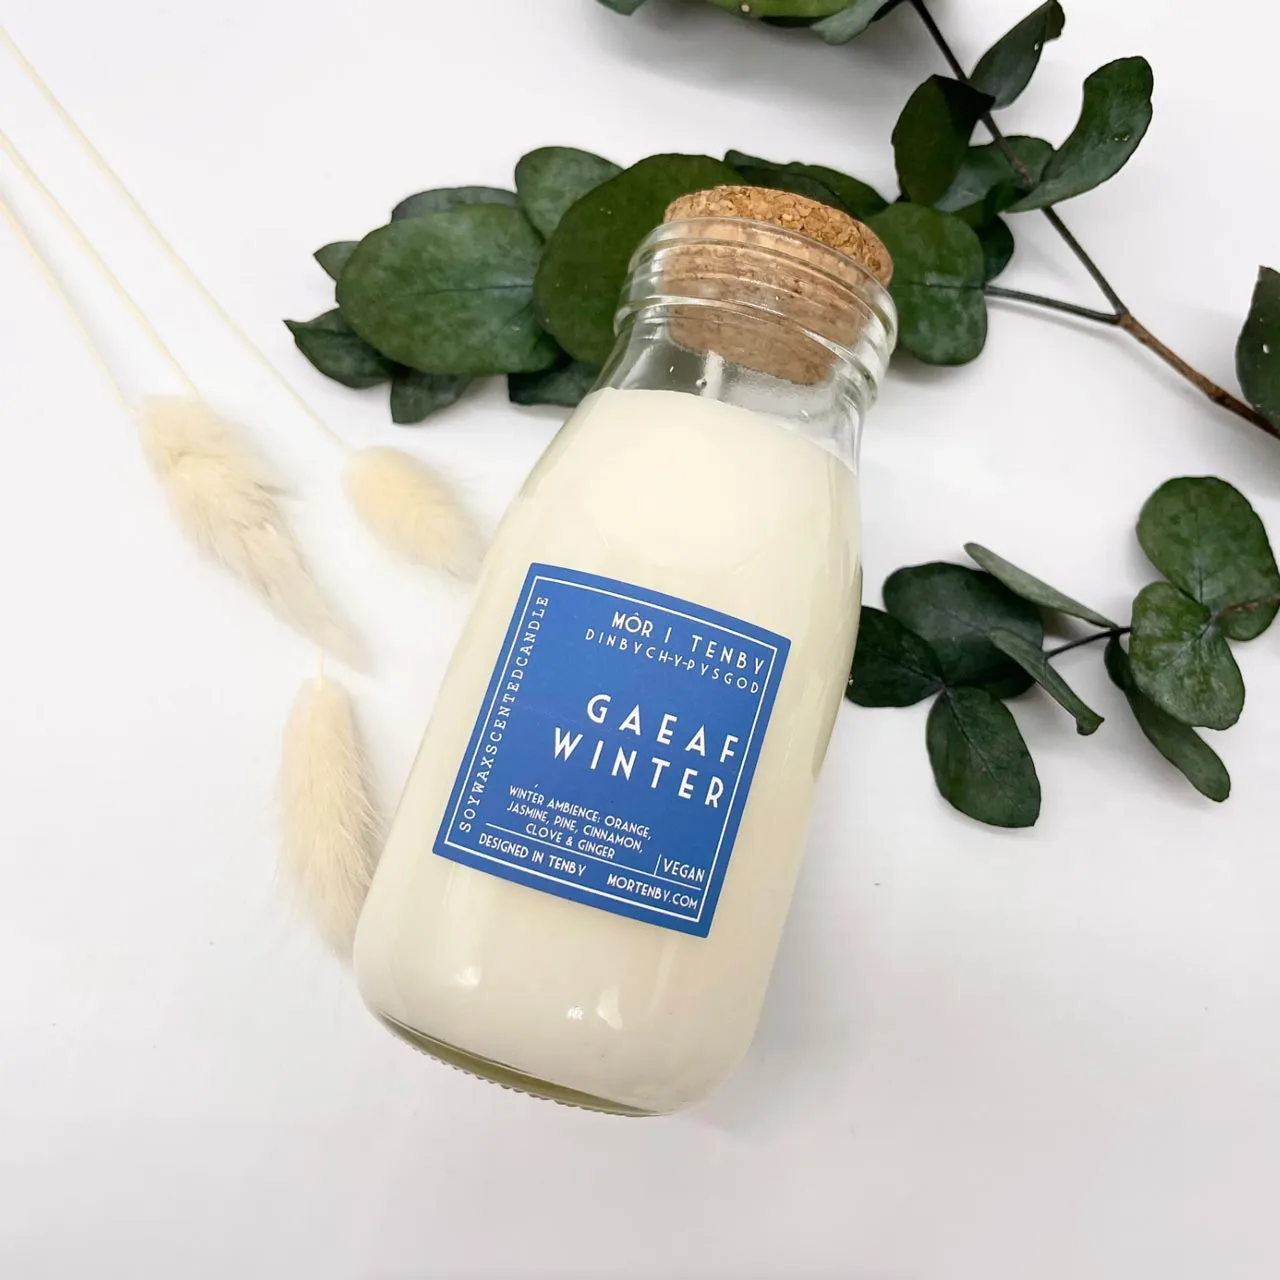 Gaeaf - Winter Mor Milk Bottle Candle